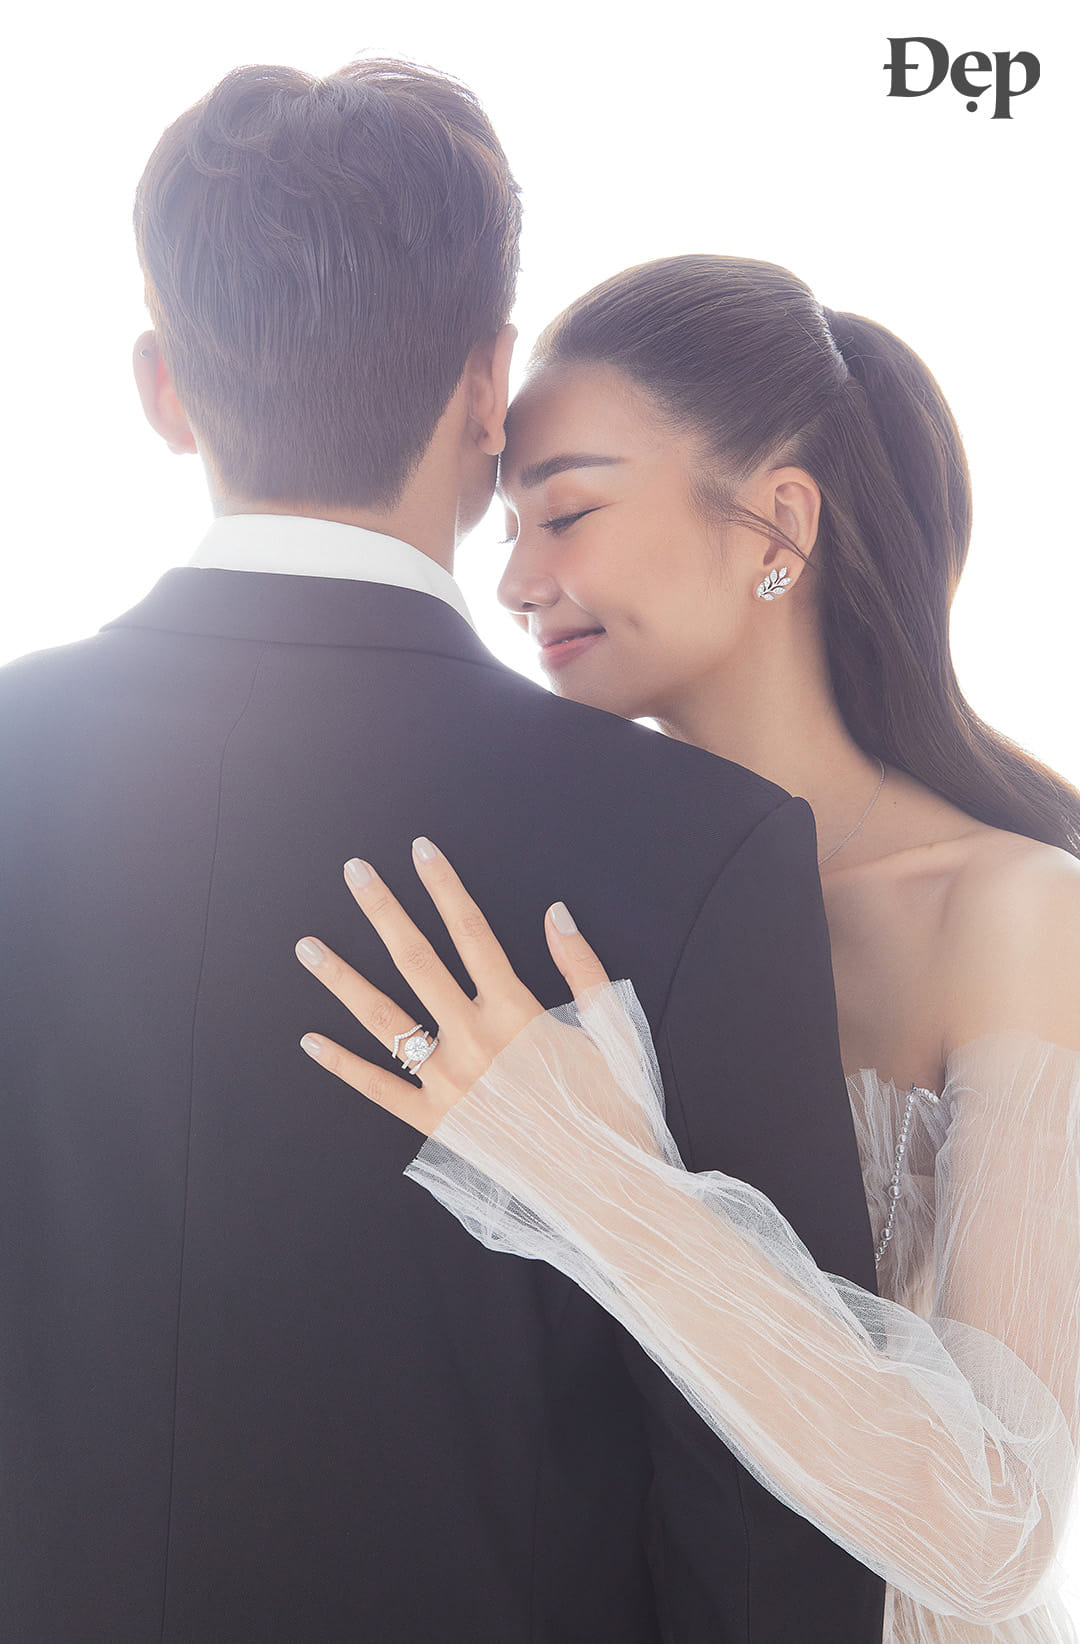 Hình ảnh từ hôn lễ của siêu mẫu Thanh Hằng, cô dâu đẹp rực rỡ trong sắc đỏ về nhà chồng - ảnh 8